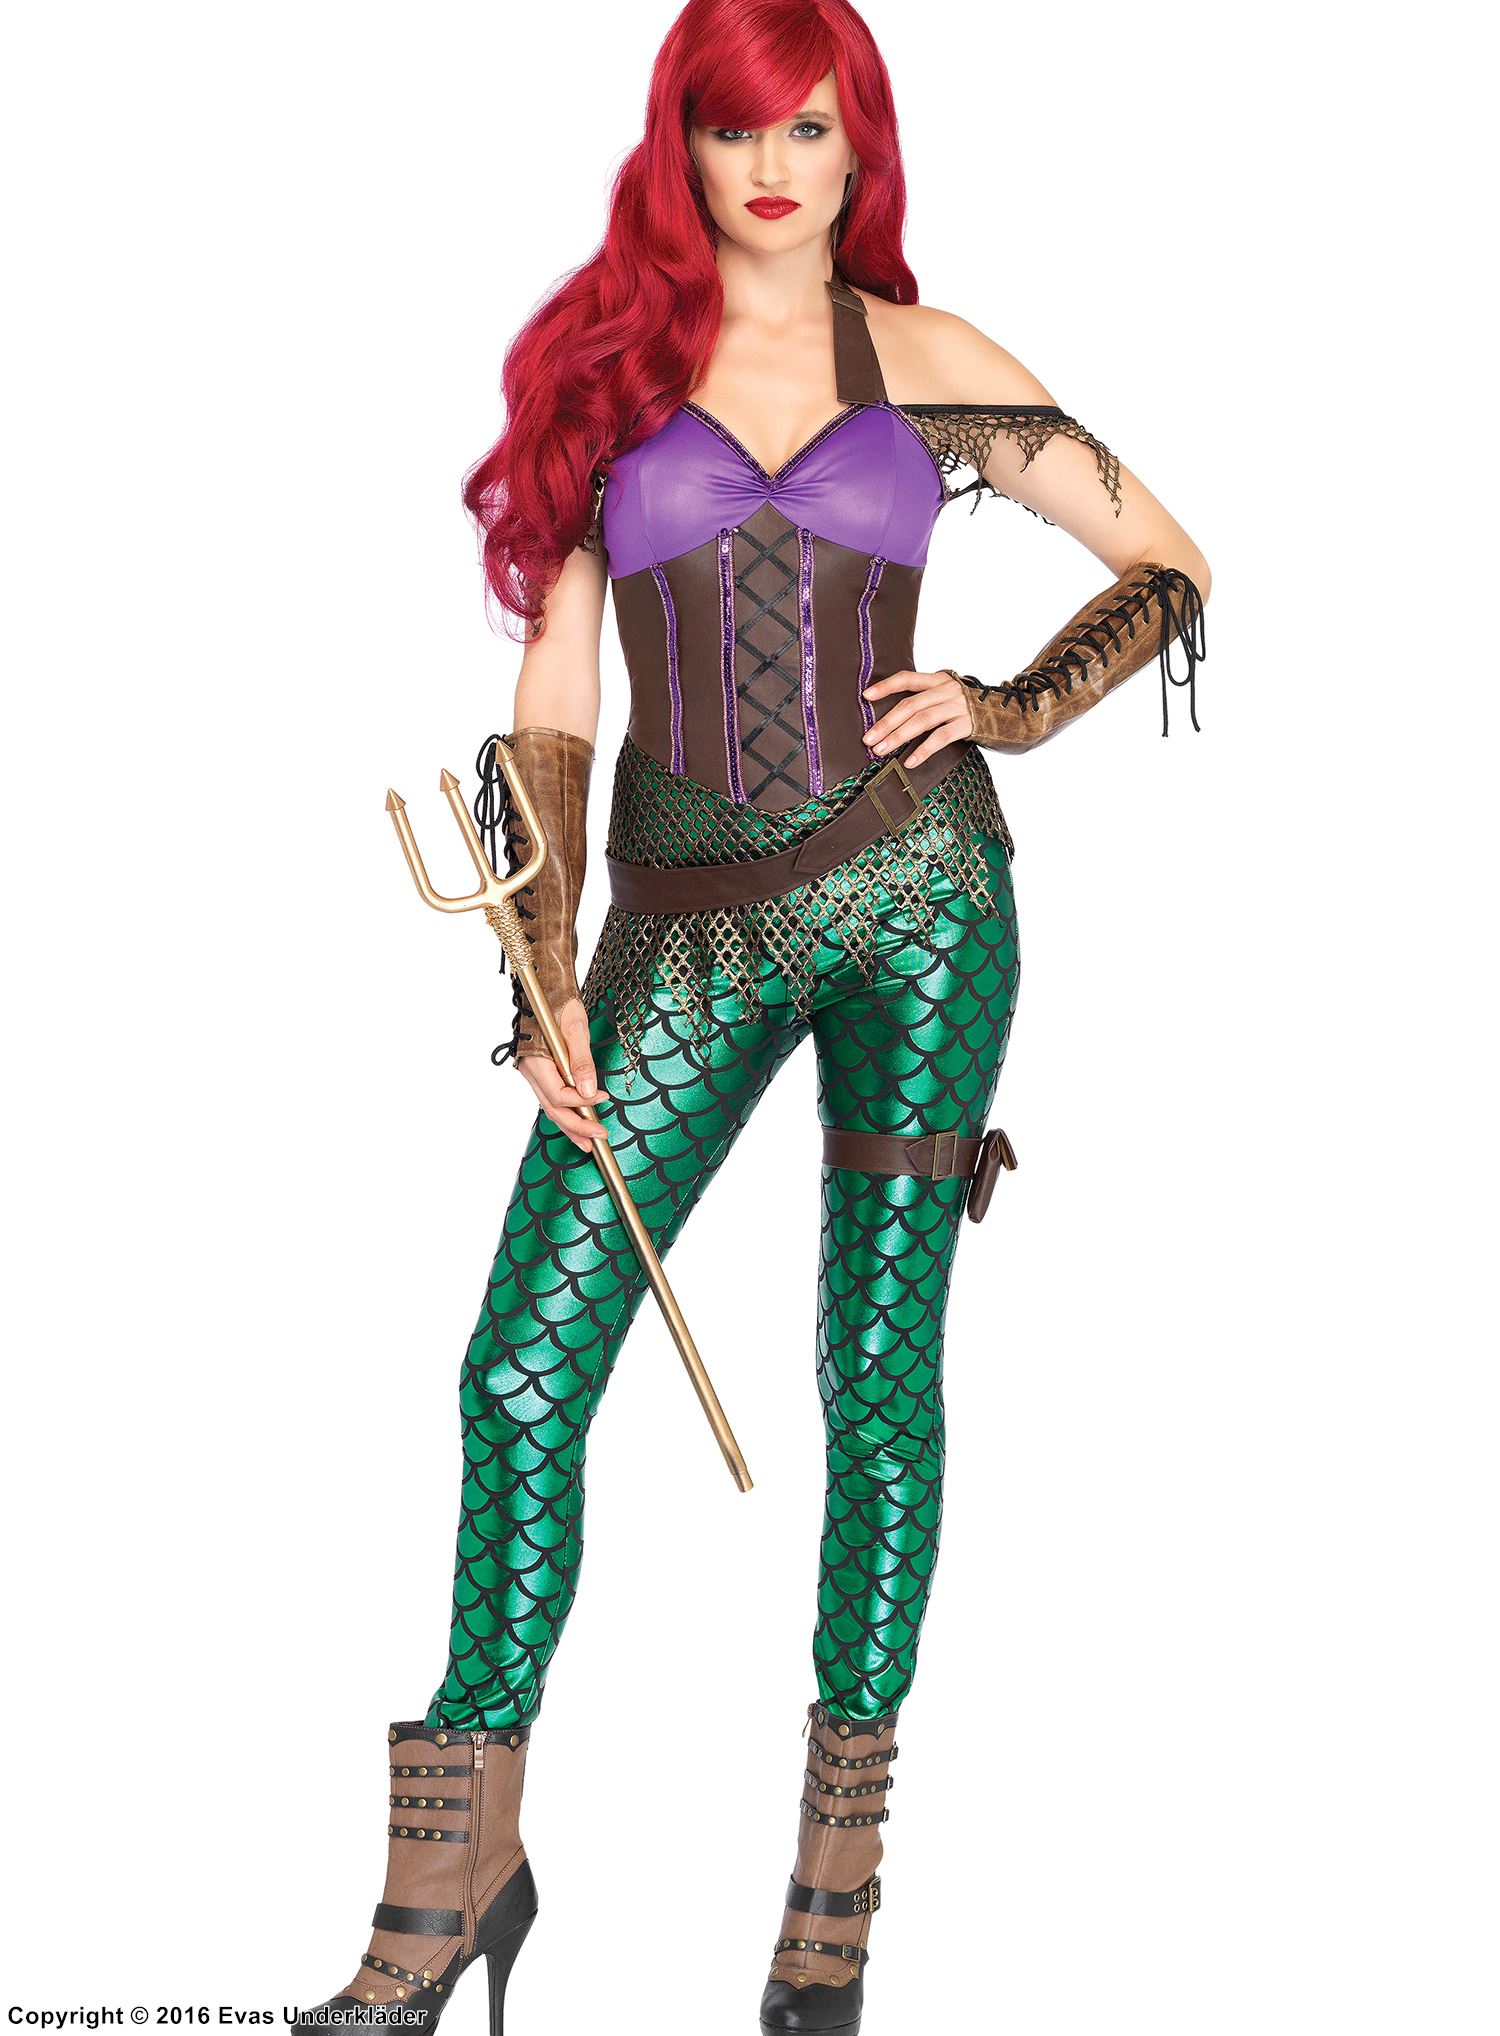 Mera from Aquaman, costume catsuit, fish scales